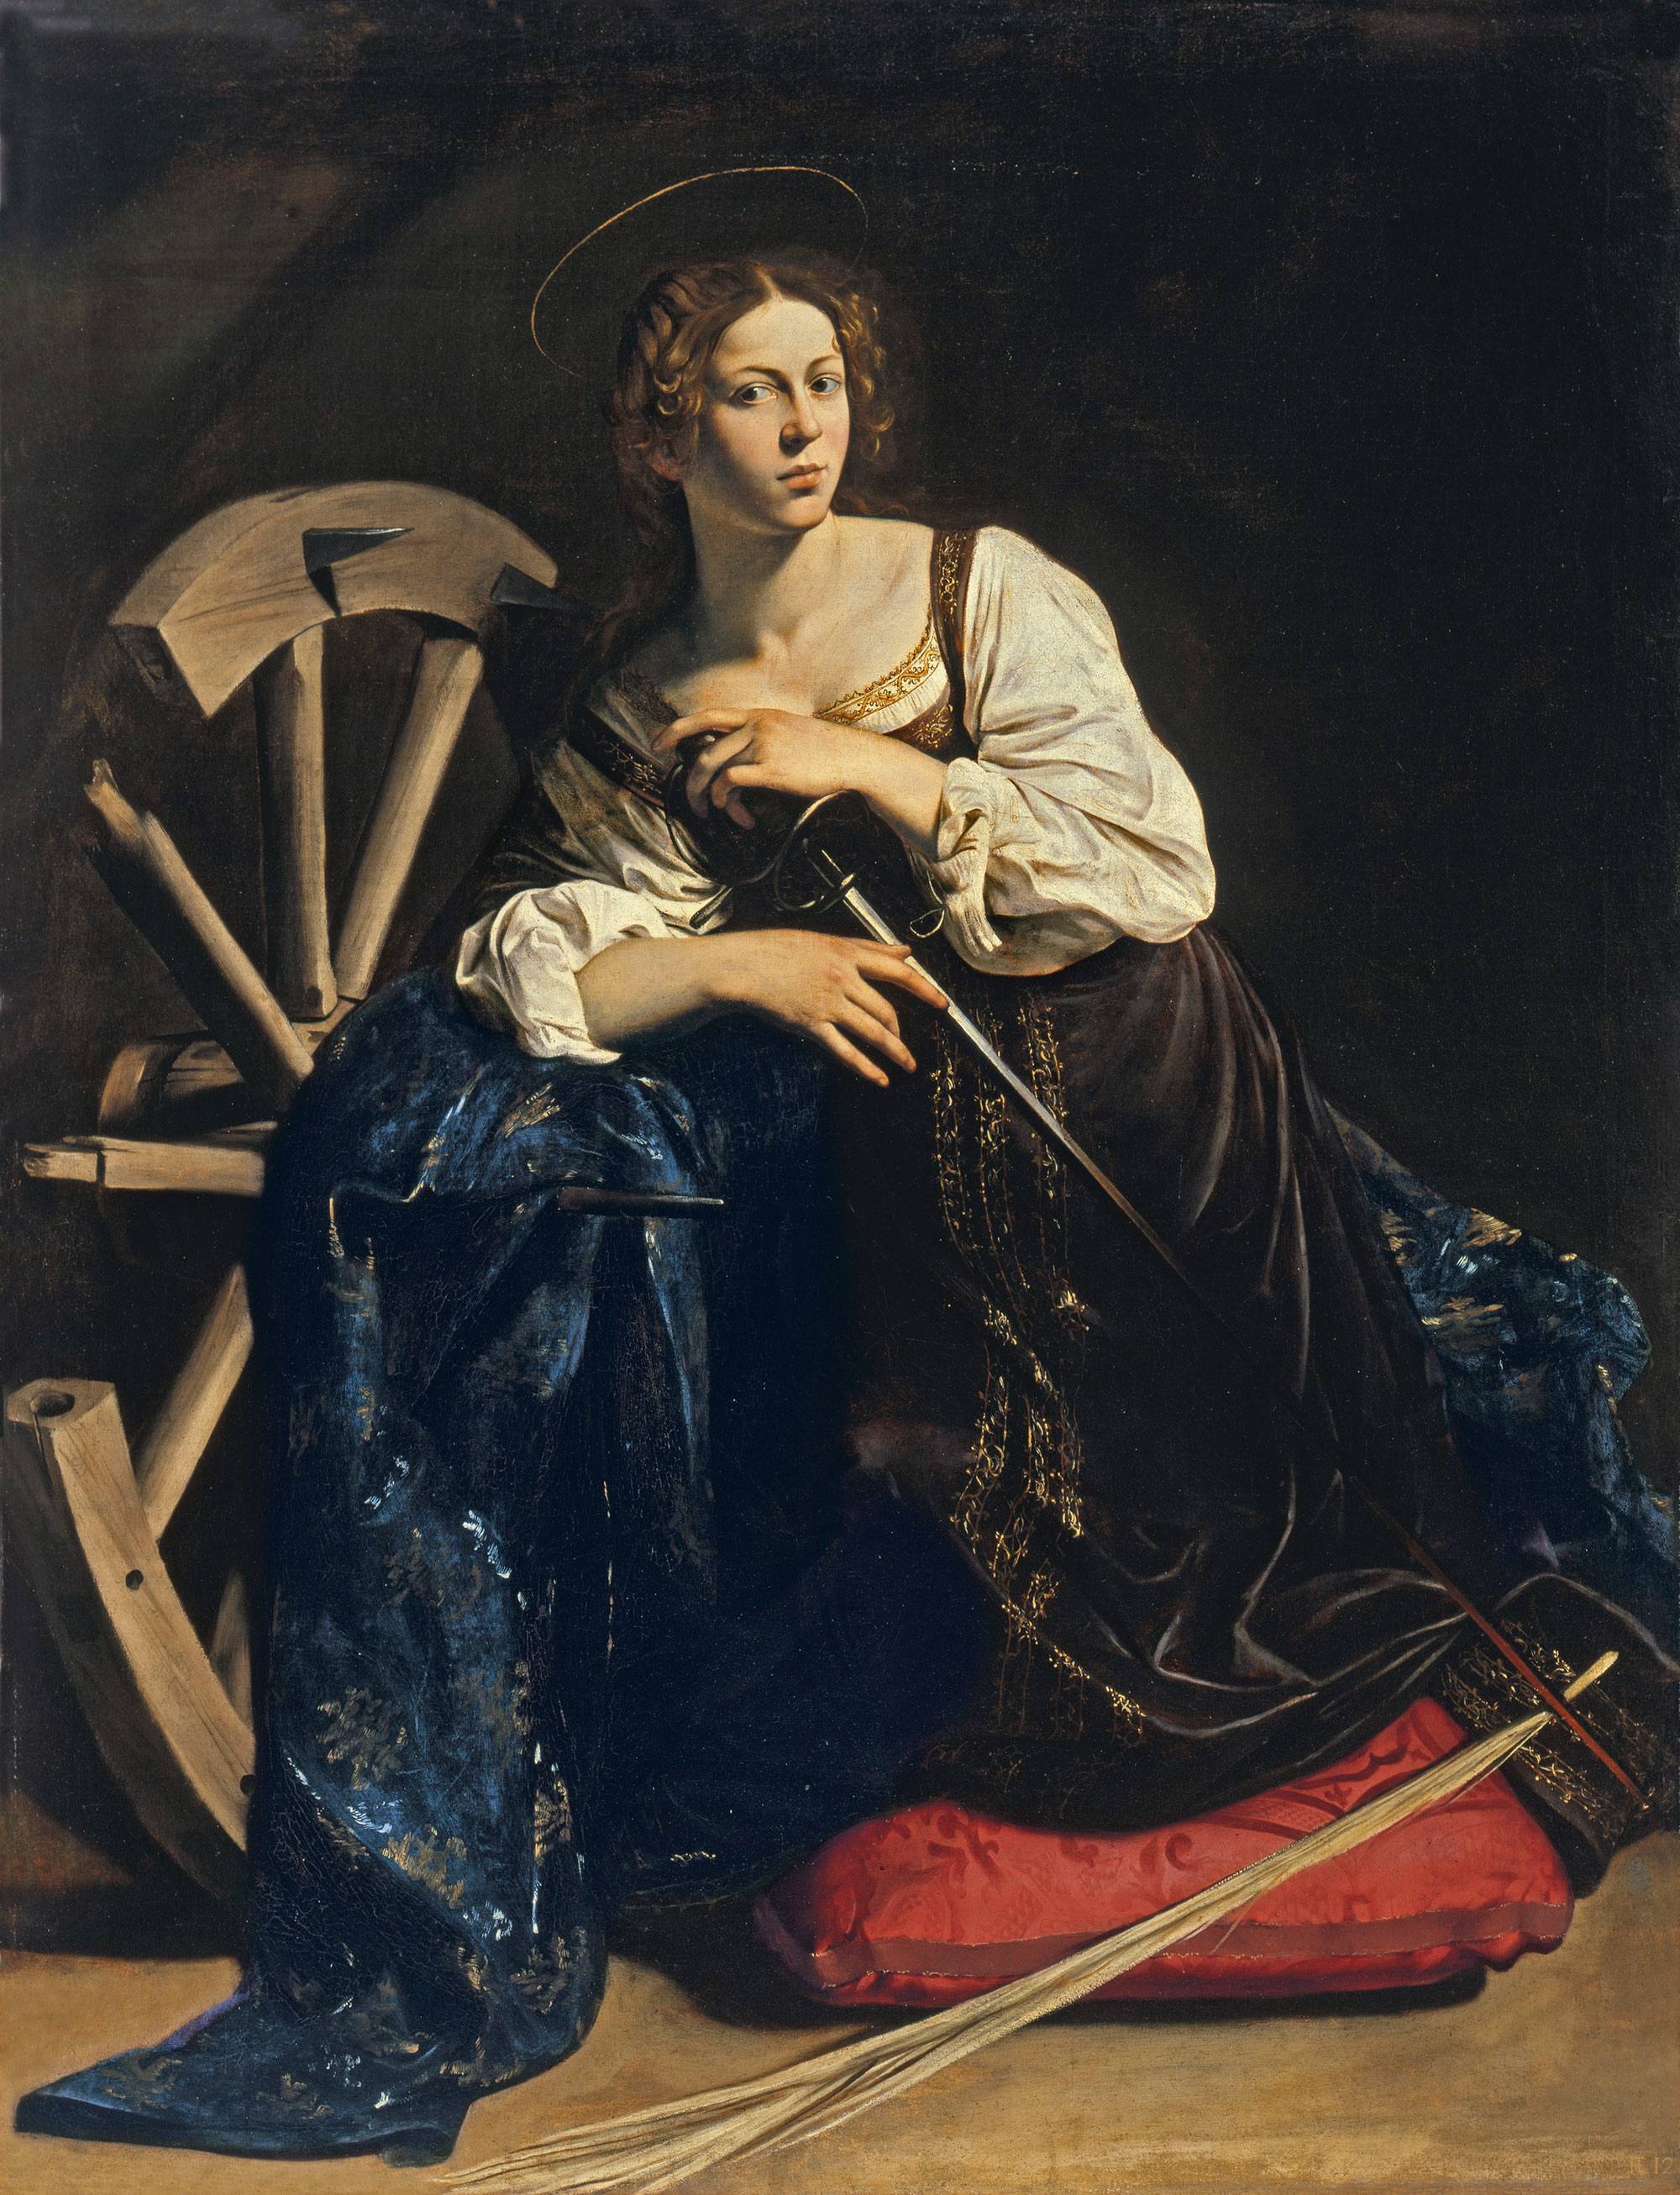 Caravaggio (1595-1596)